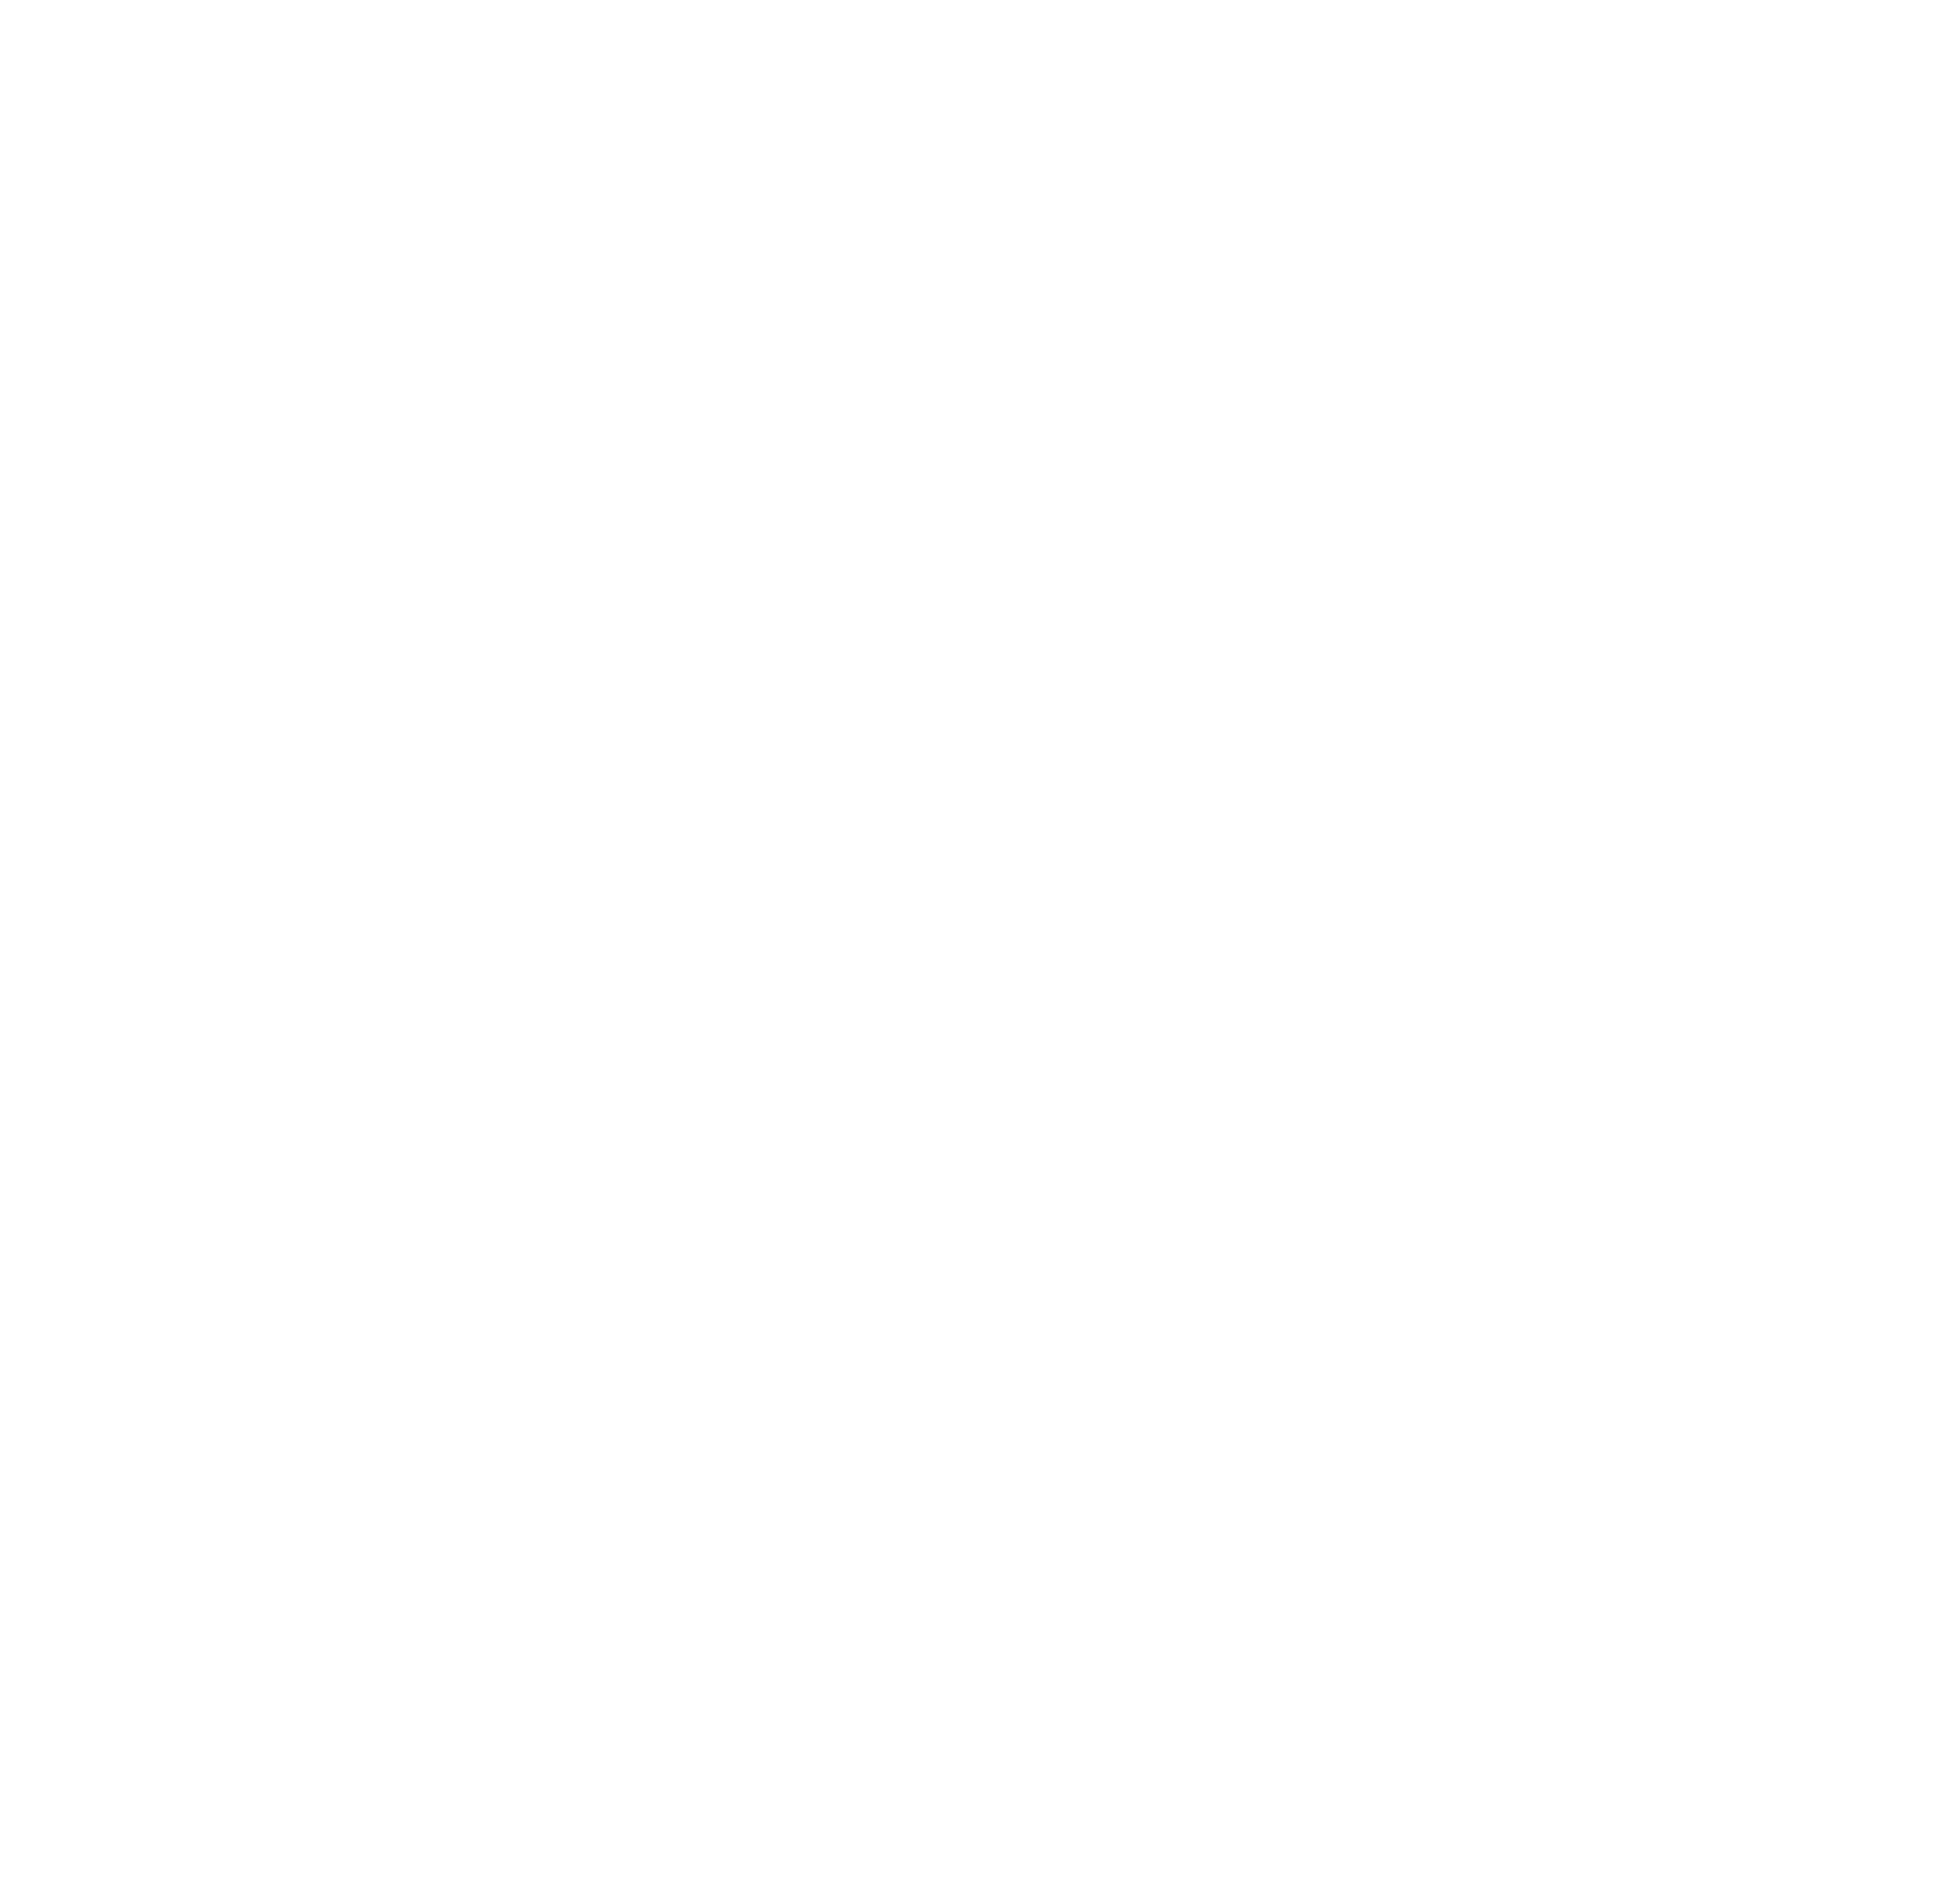 HONG BAO WUSHU